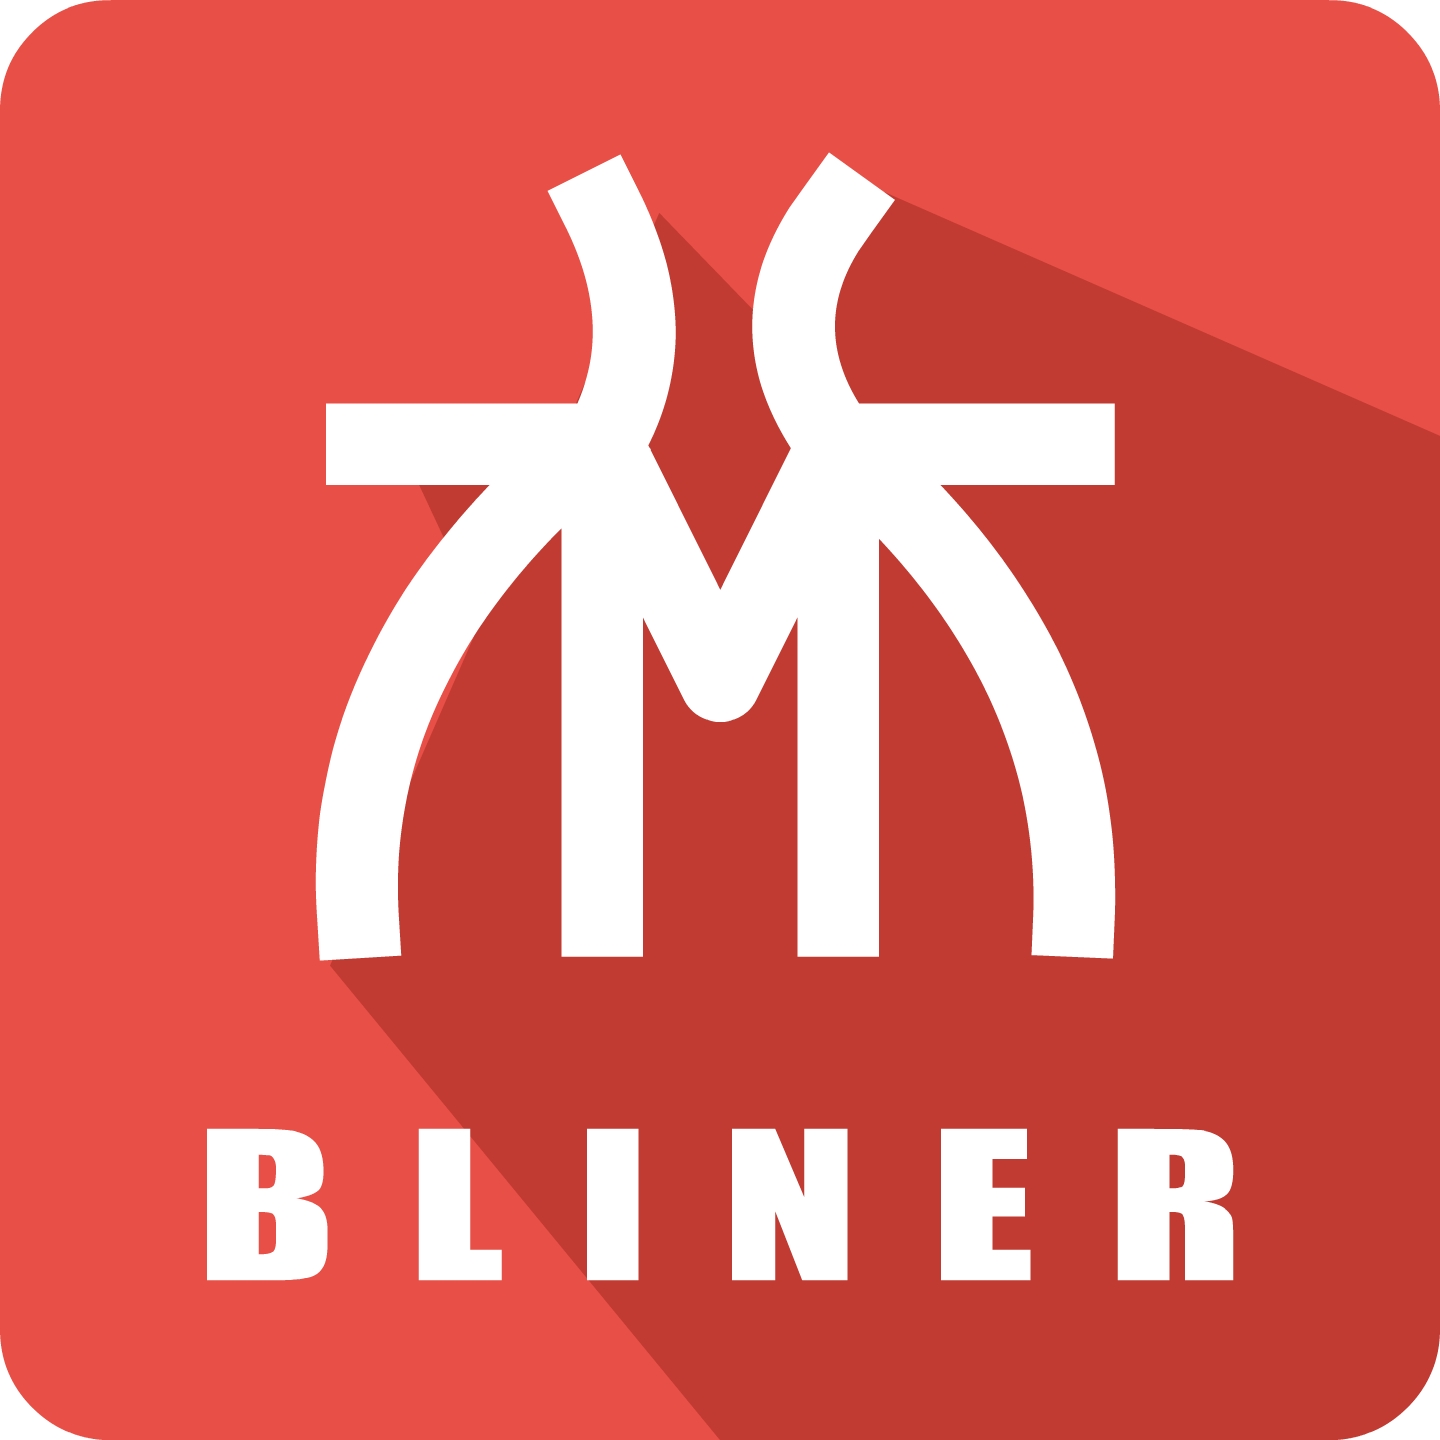 Bliner's Site